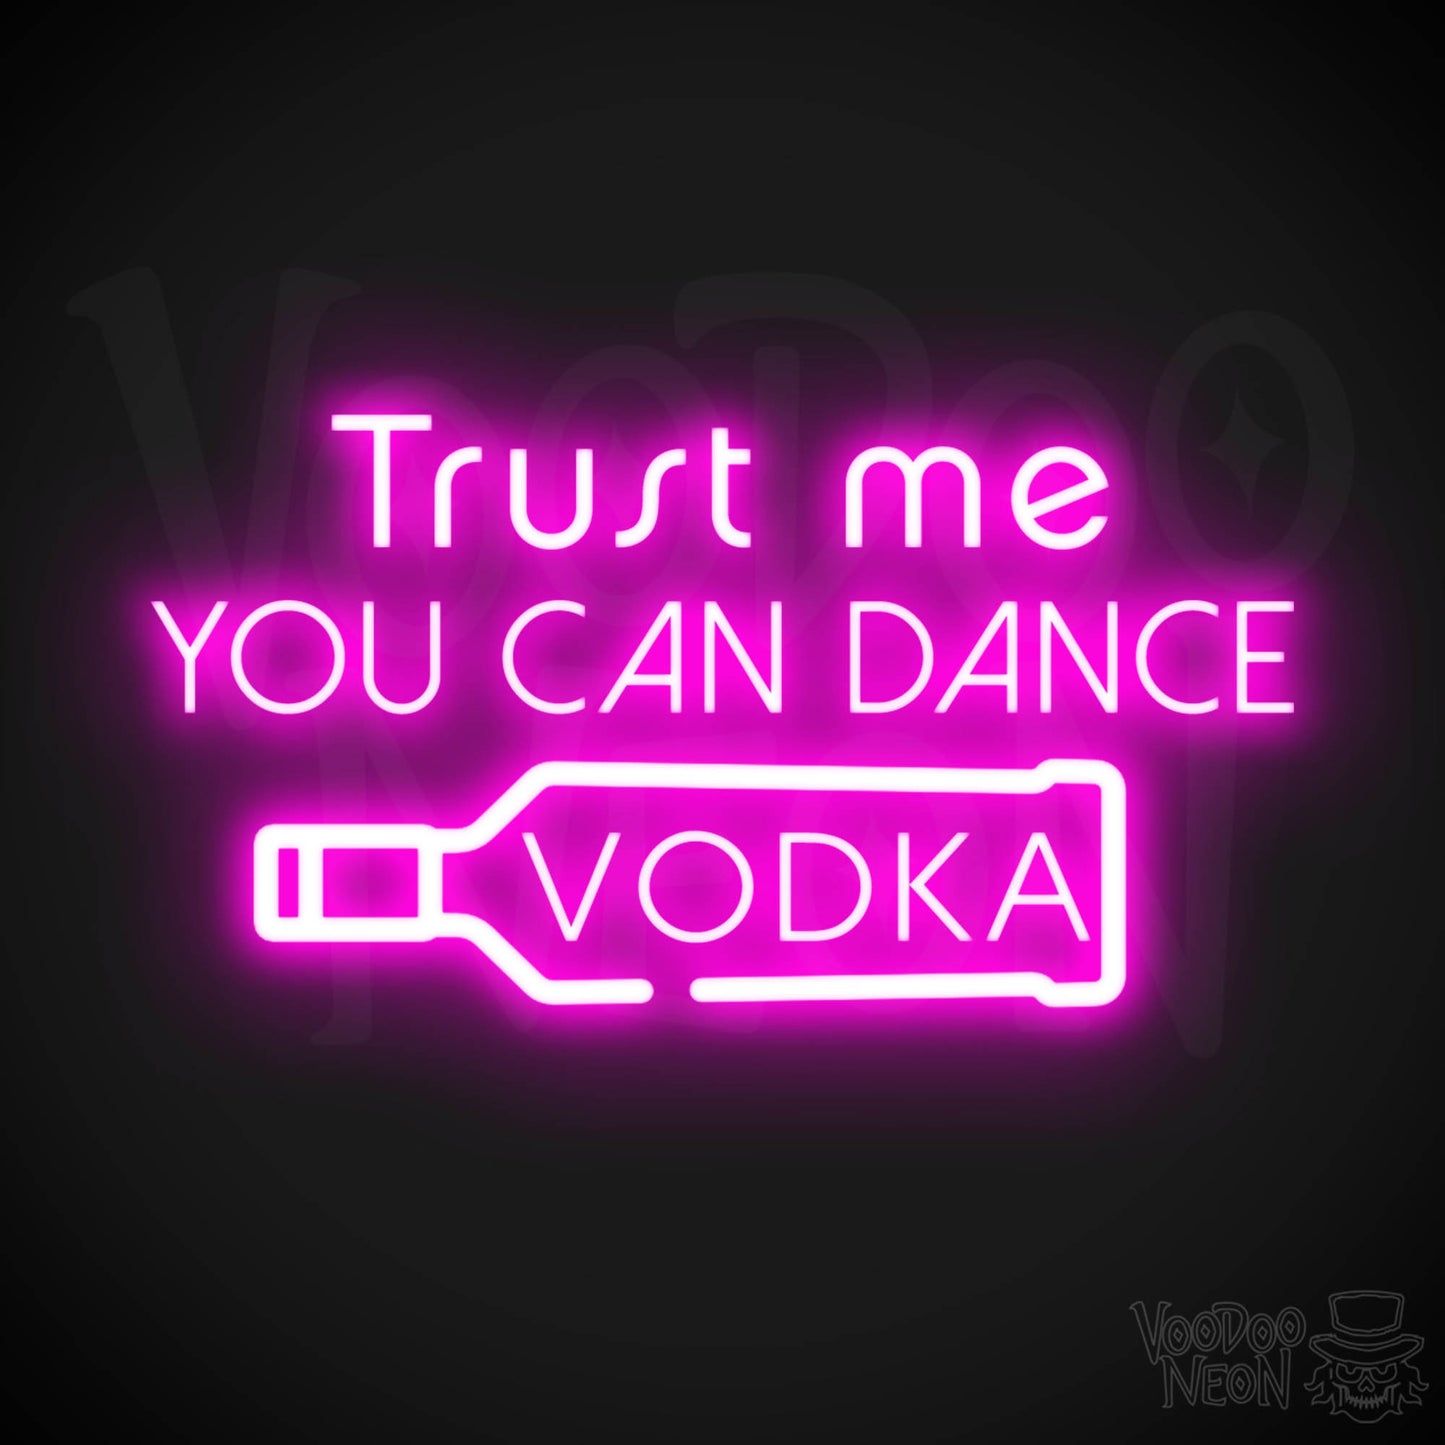 Trust Me You Can Dance Vodka Neon Sign - Vodka Bar Sign - LED Signs - Color Pink